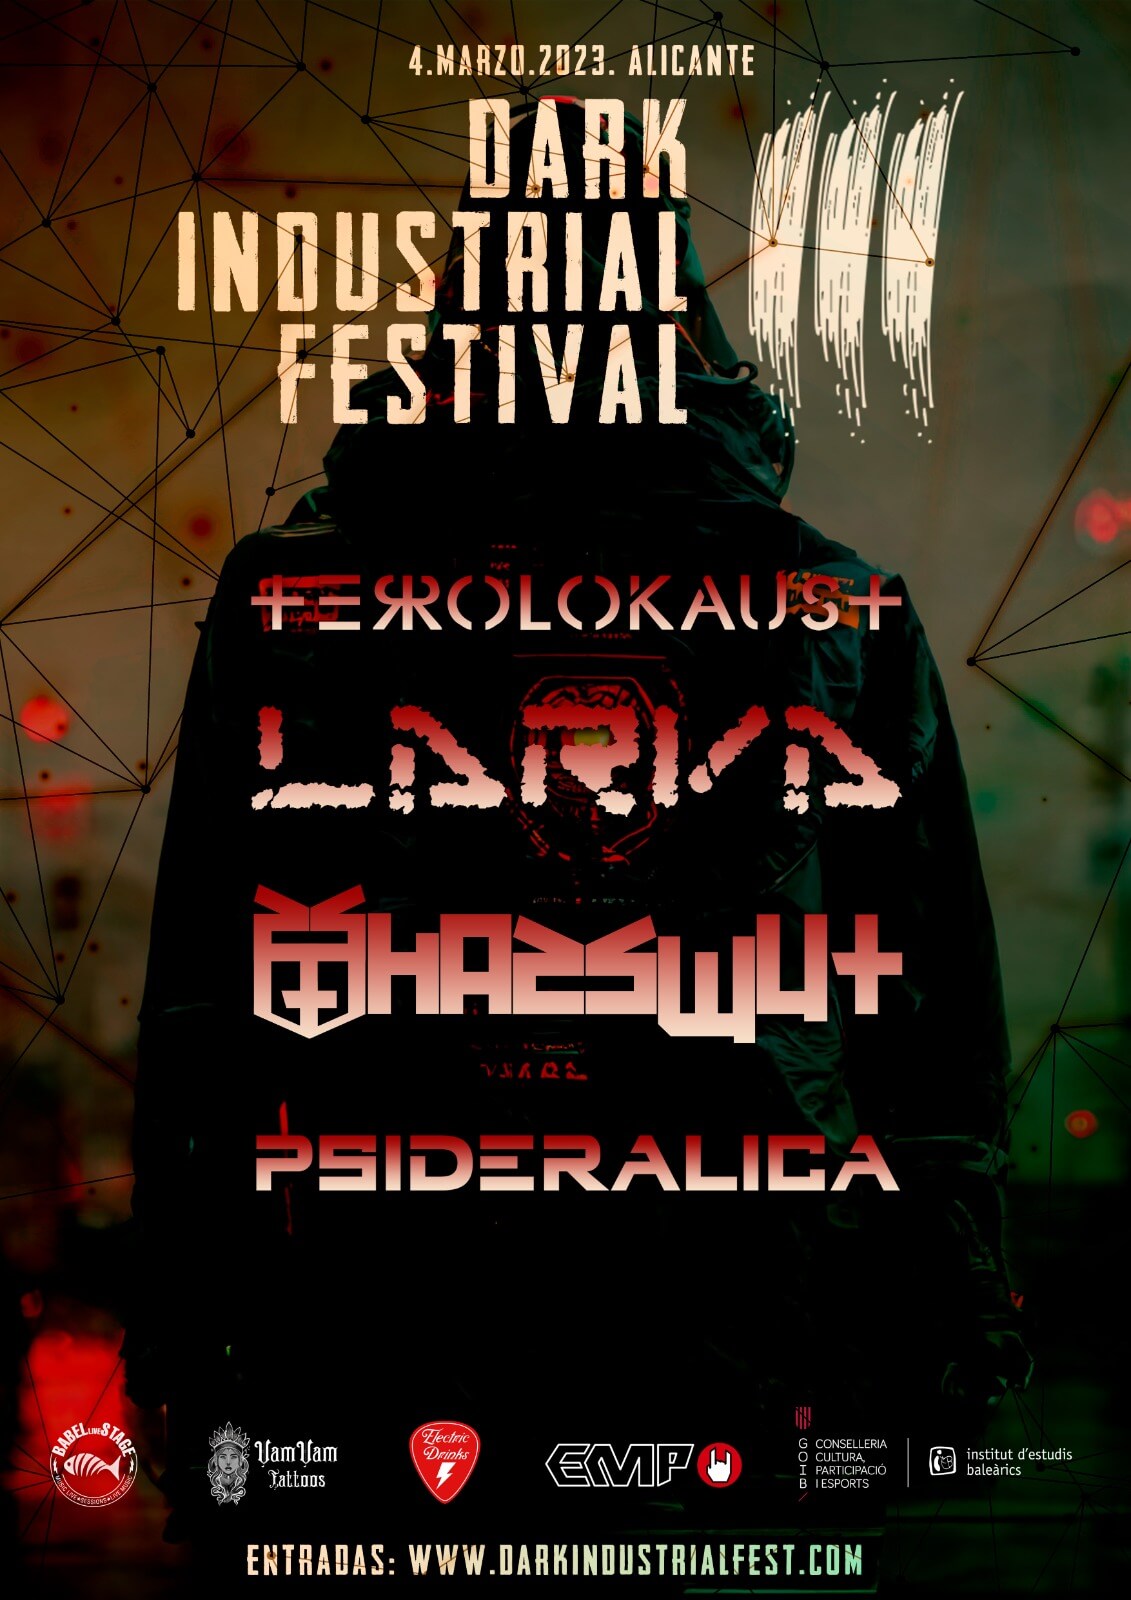 Festival de música industrial metal y EBM en Alicante